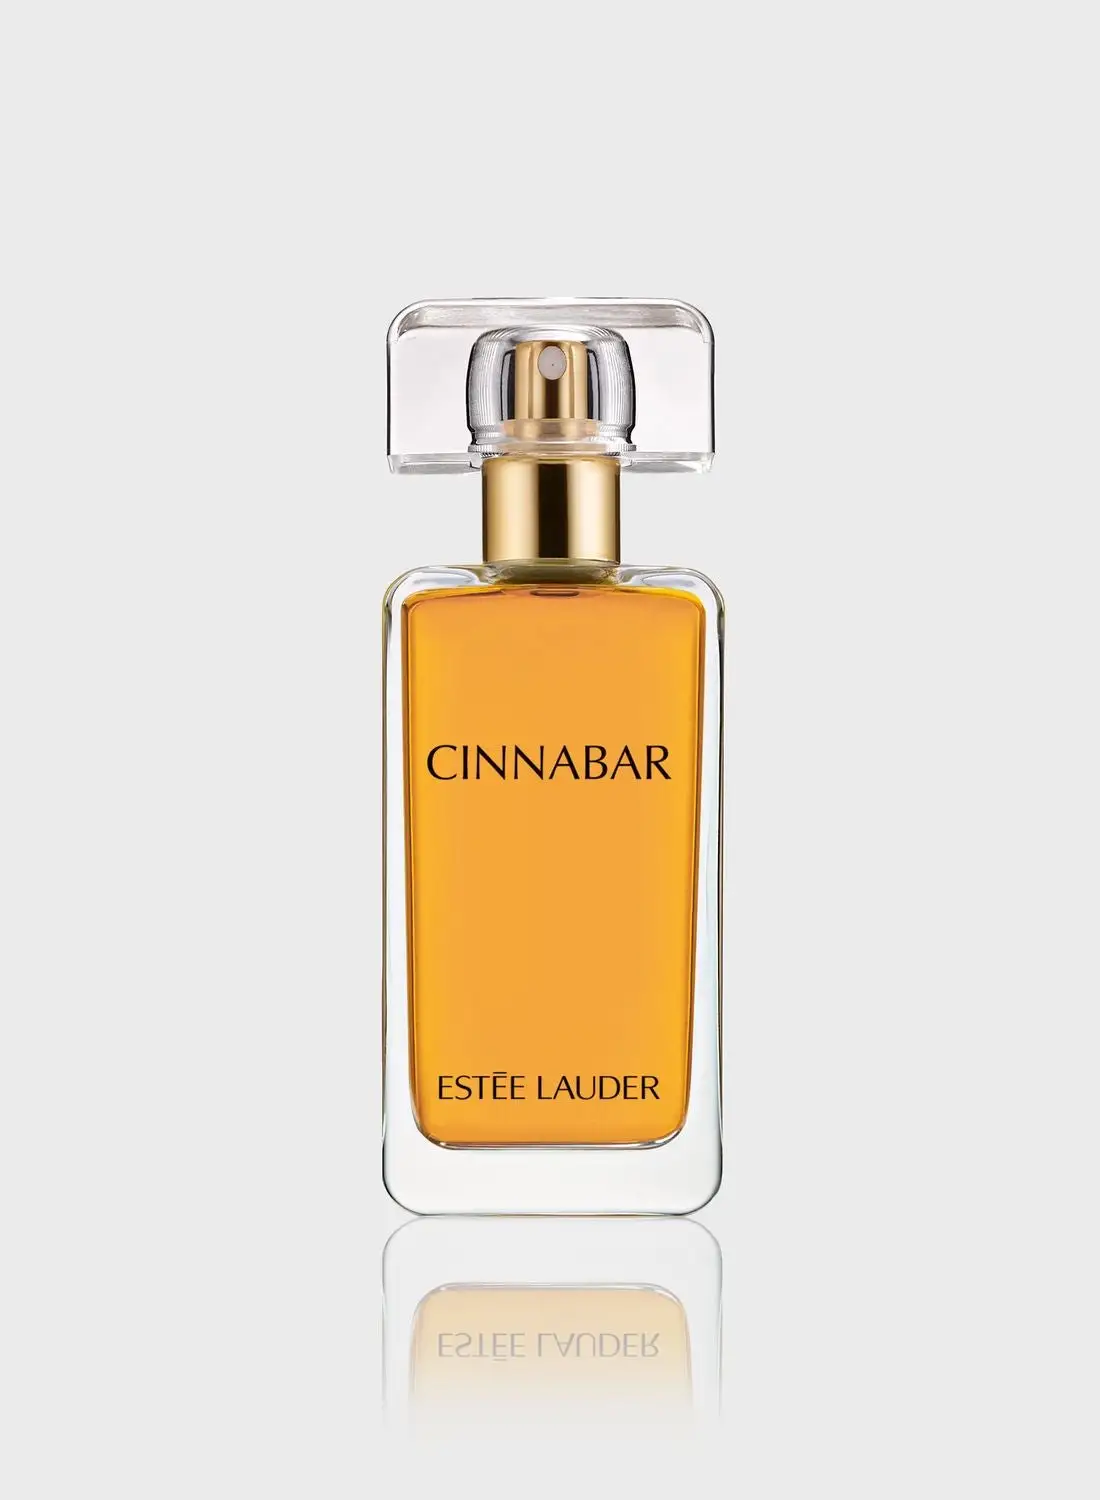 ESTEE LAUDER Cinnabar Eau de Parfum 50ml